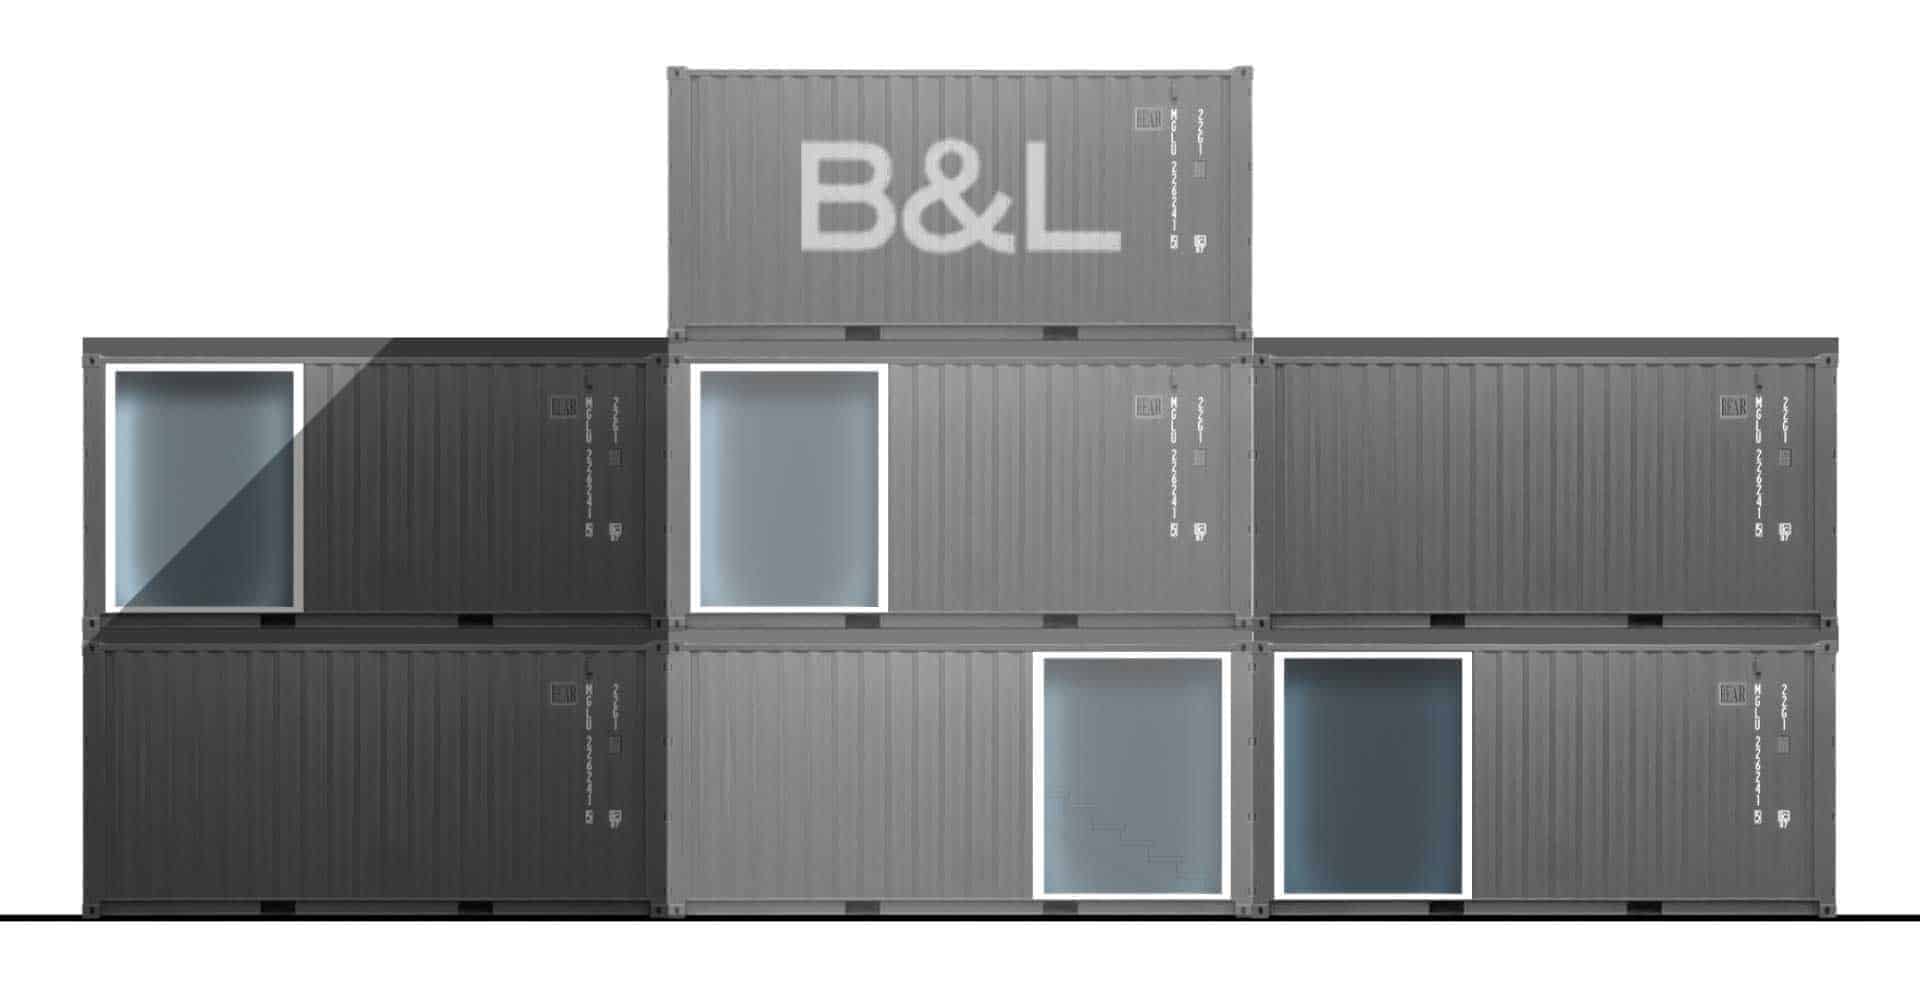 B&L Real Estate GmbH, Konzeptentwicklung, Mockup, Seecontainer, Modulare Gebäude, Hamburg, Architektur